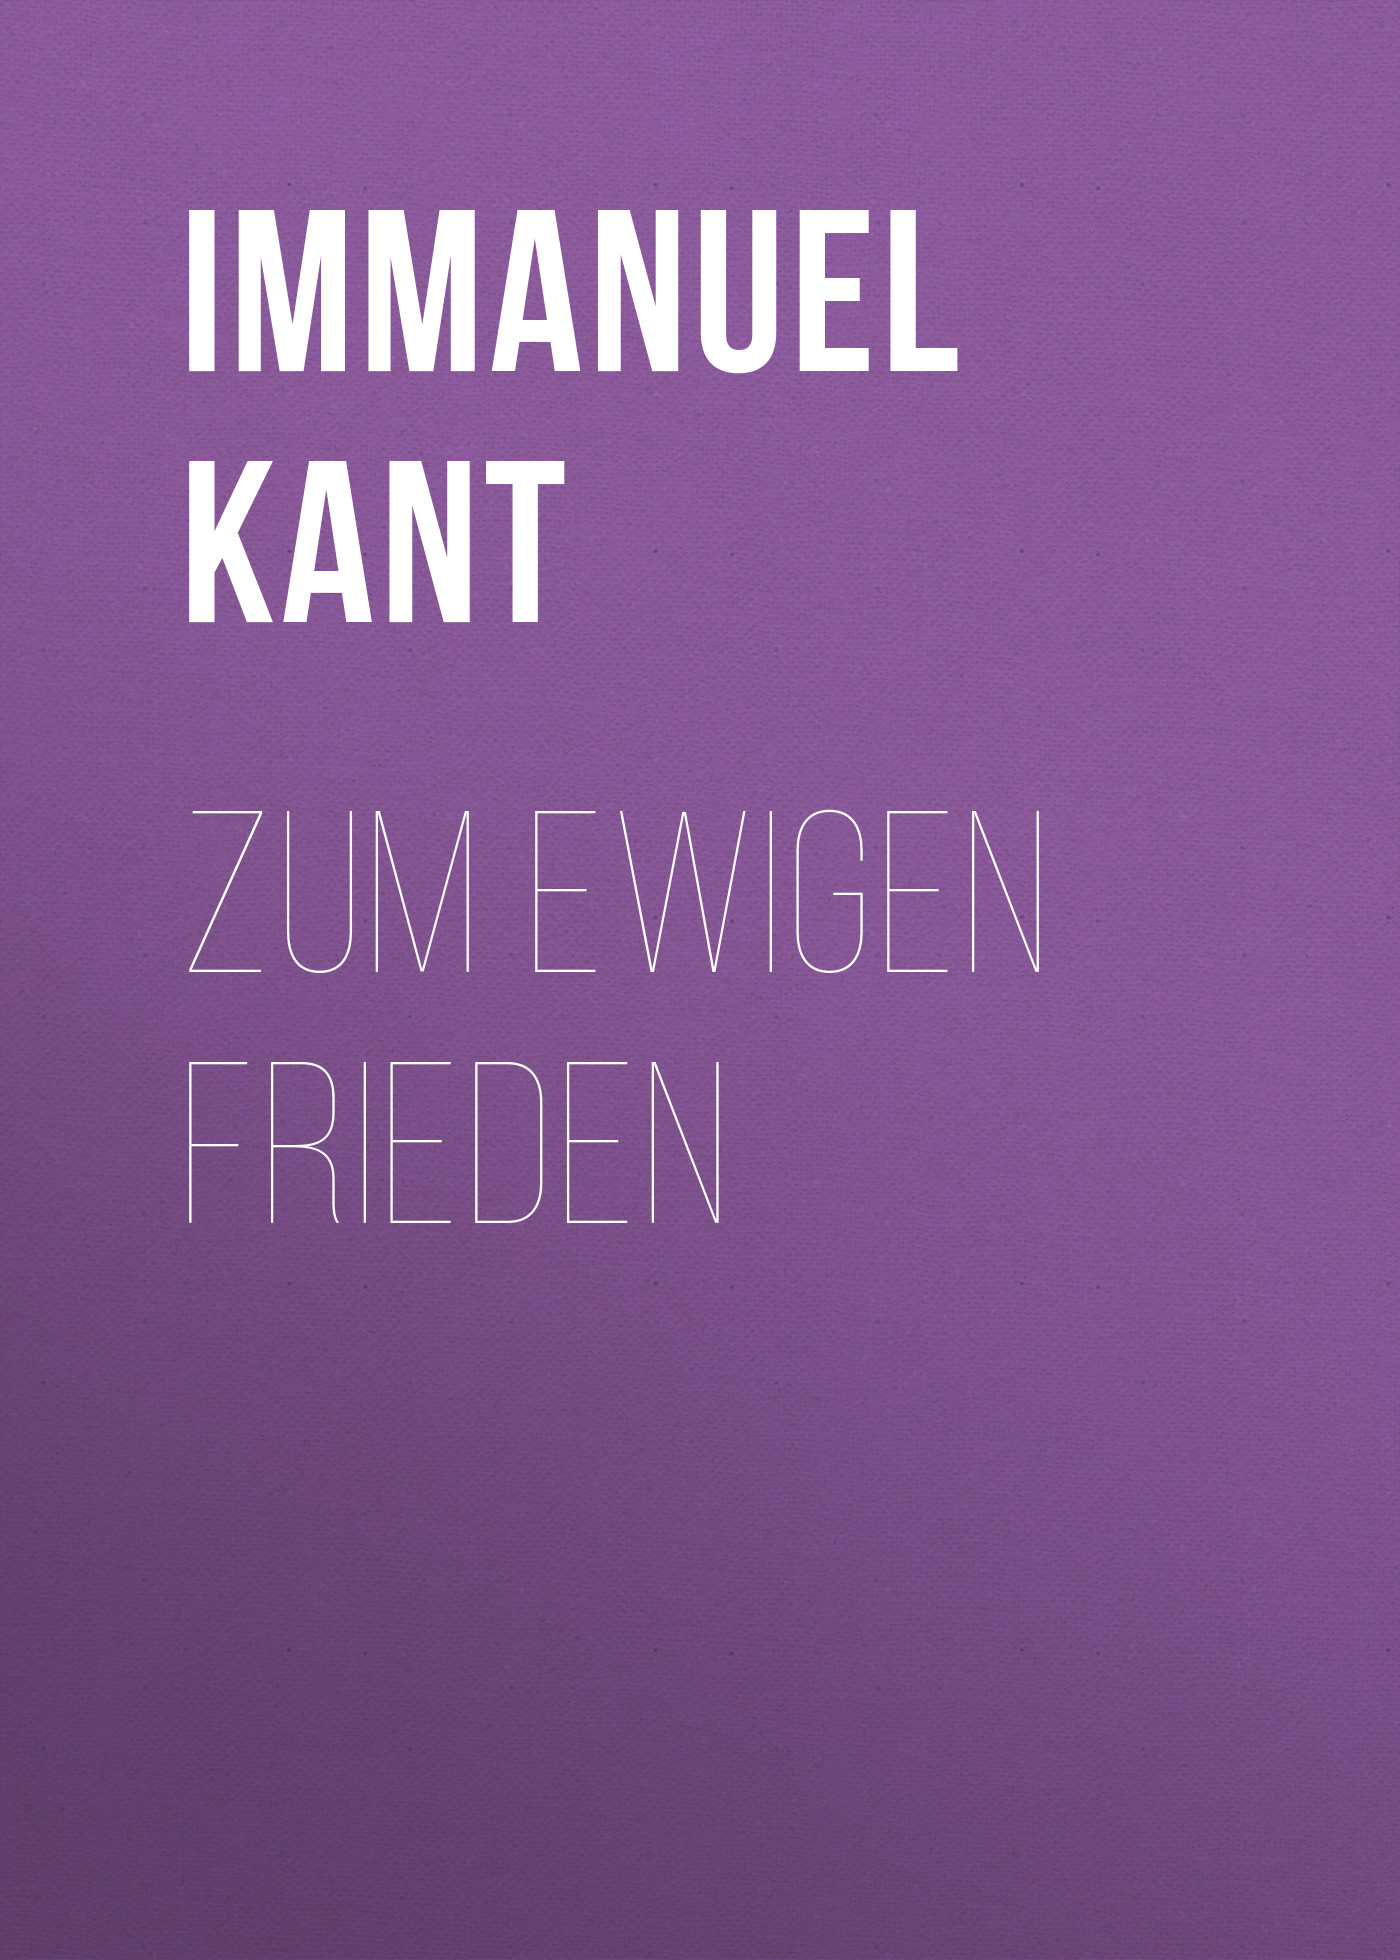 Книга Zum ewigen Frieden из серии , созданная Immanuel Kant, может относится к жанру Философия, Зарубежная старинная литература, Зарубежная классика. Стоимость книги Zum ewigen Frieden  с идентификатором 25229636 составляет 0 руб.